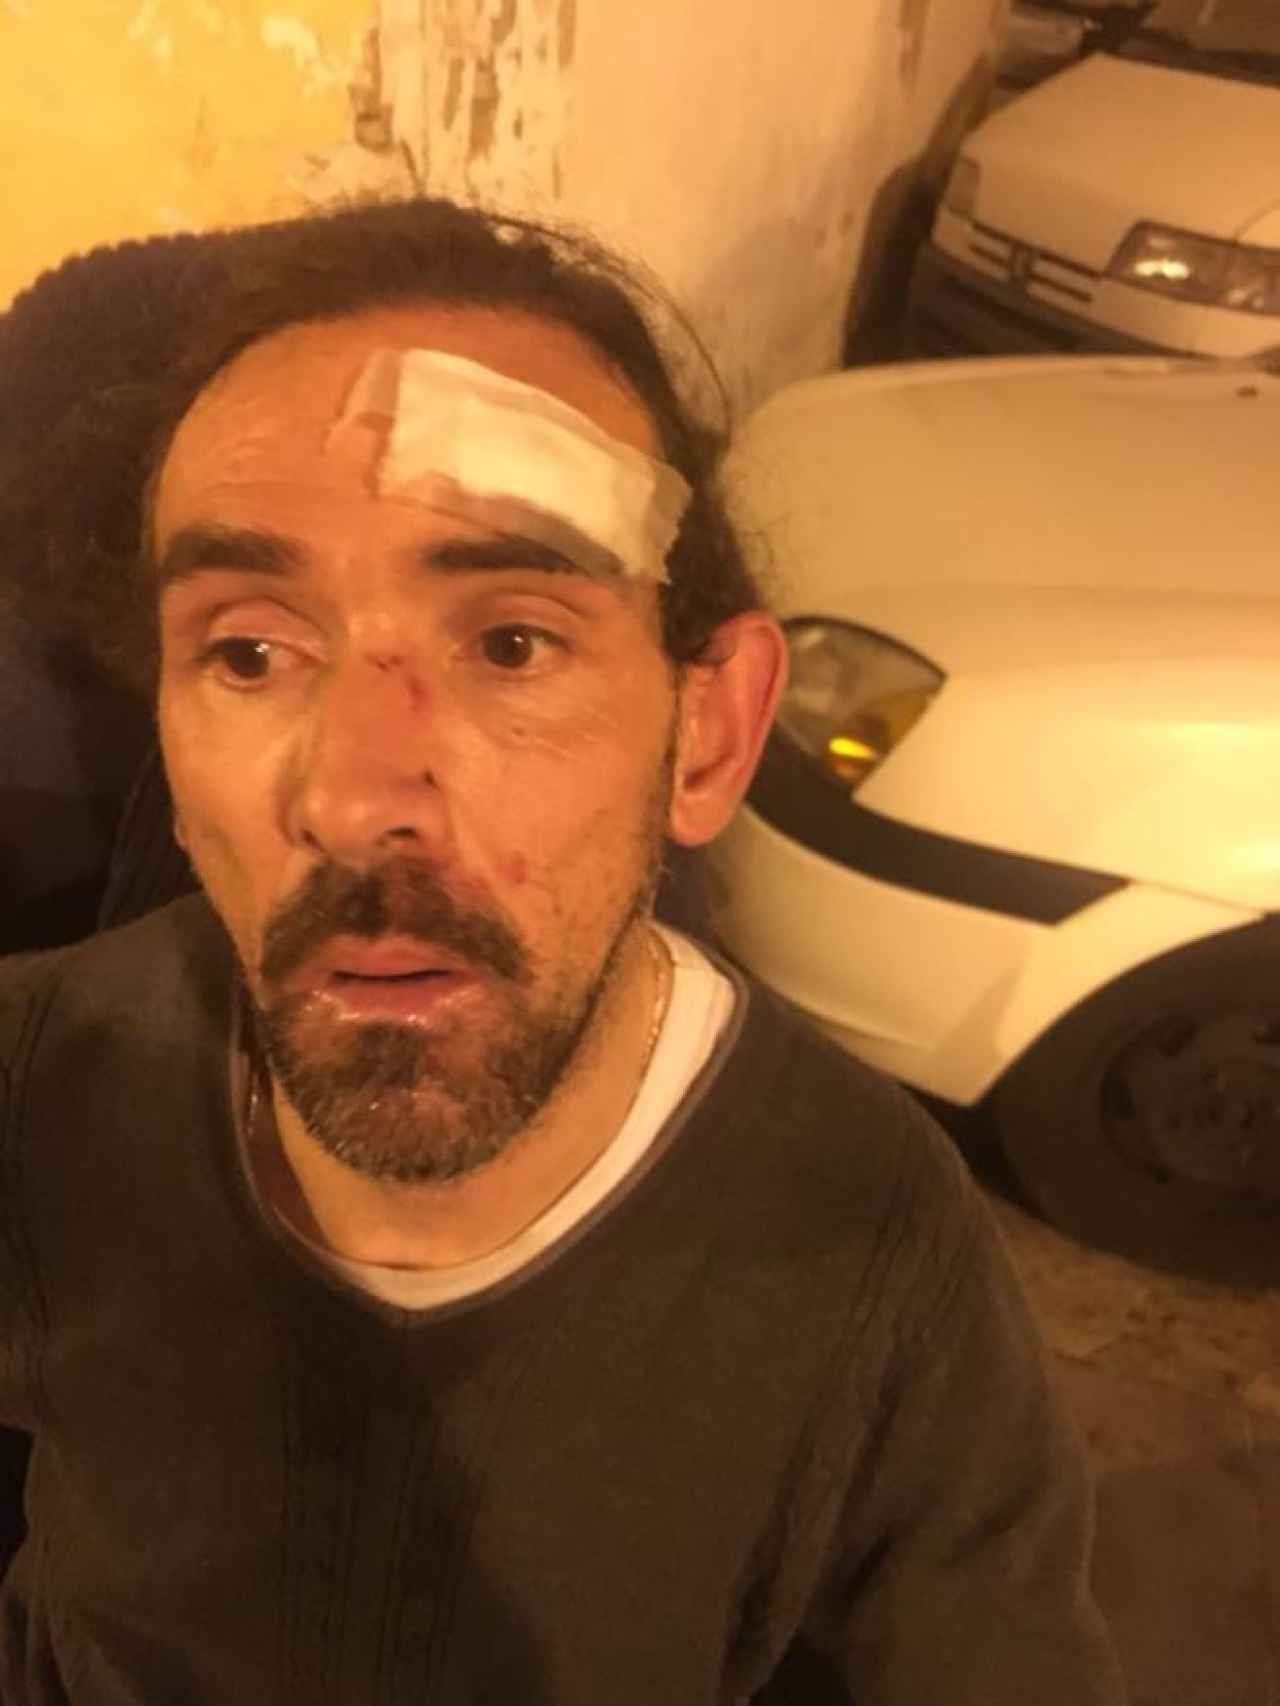 Enrique Marí, victima de la agresión, tras recibir atención médica en el Hospital Clínico de Valencia.